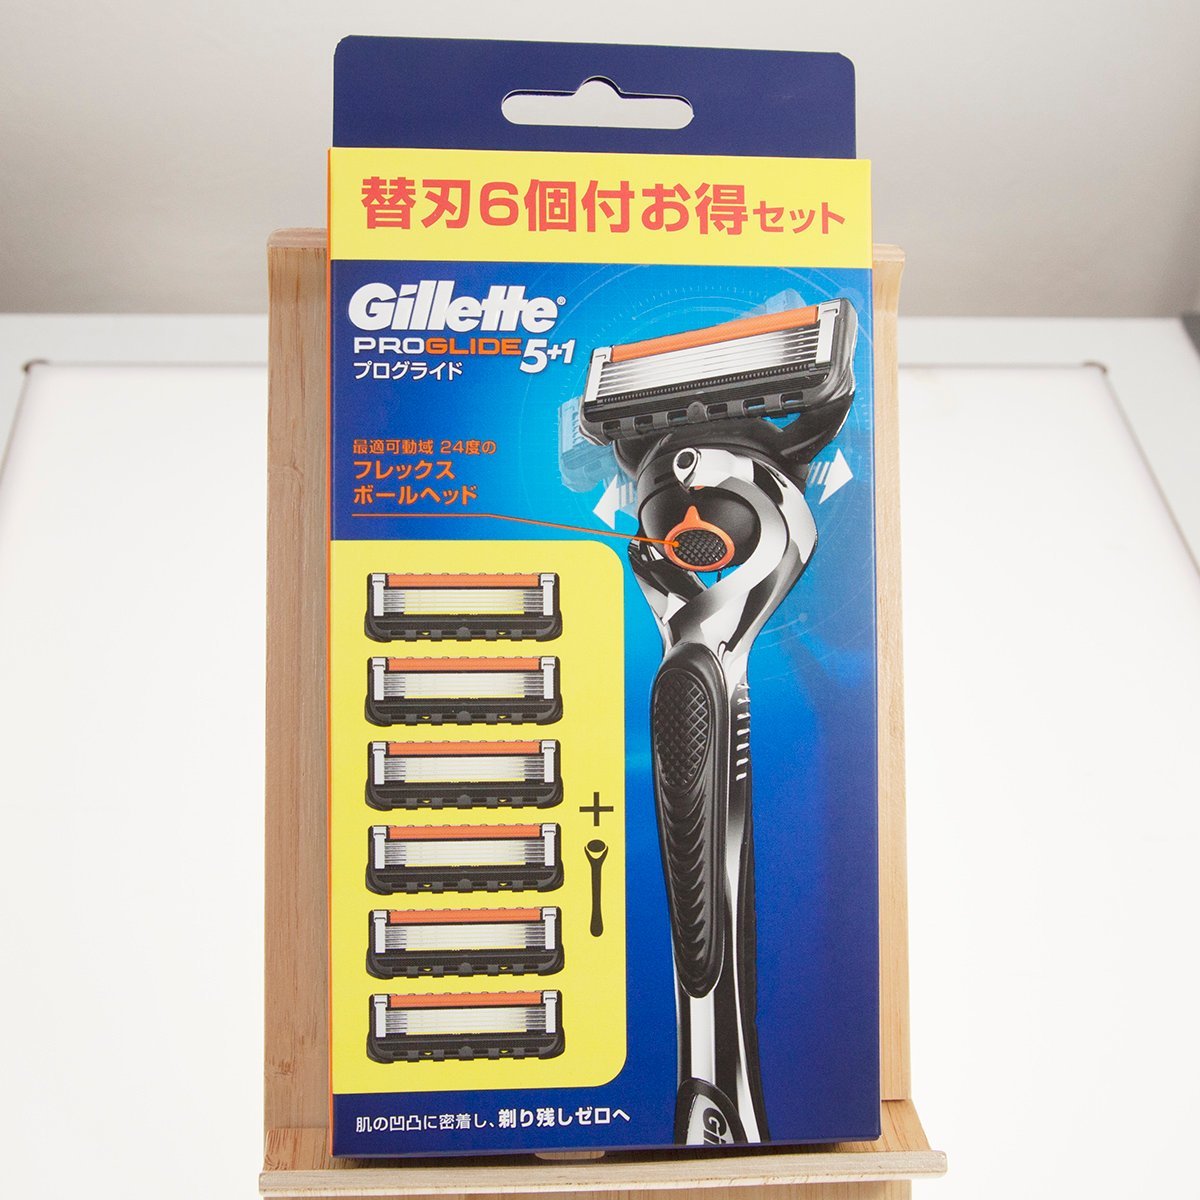 【Gillette】...「PROGLIDE/ pro ...5+1」 сам товар 1 штука  + сменное лезвие   6 штук  включено    ... комплект   ...  бритва  【 неиспользуемый 】